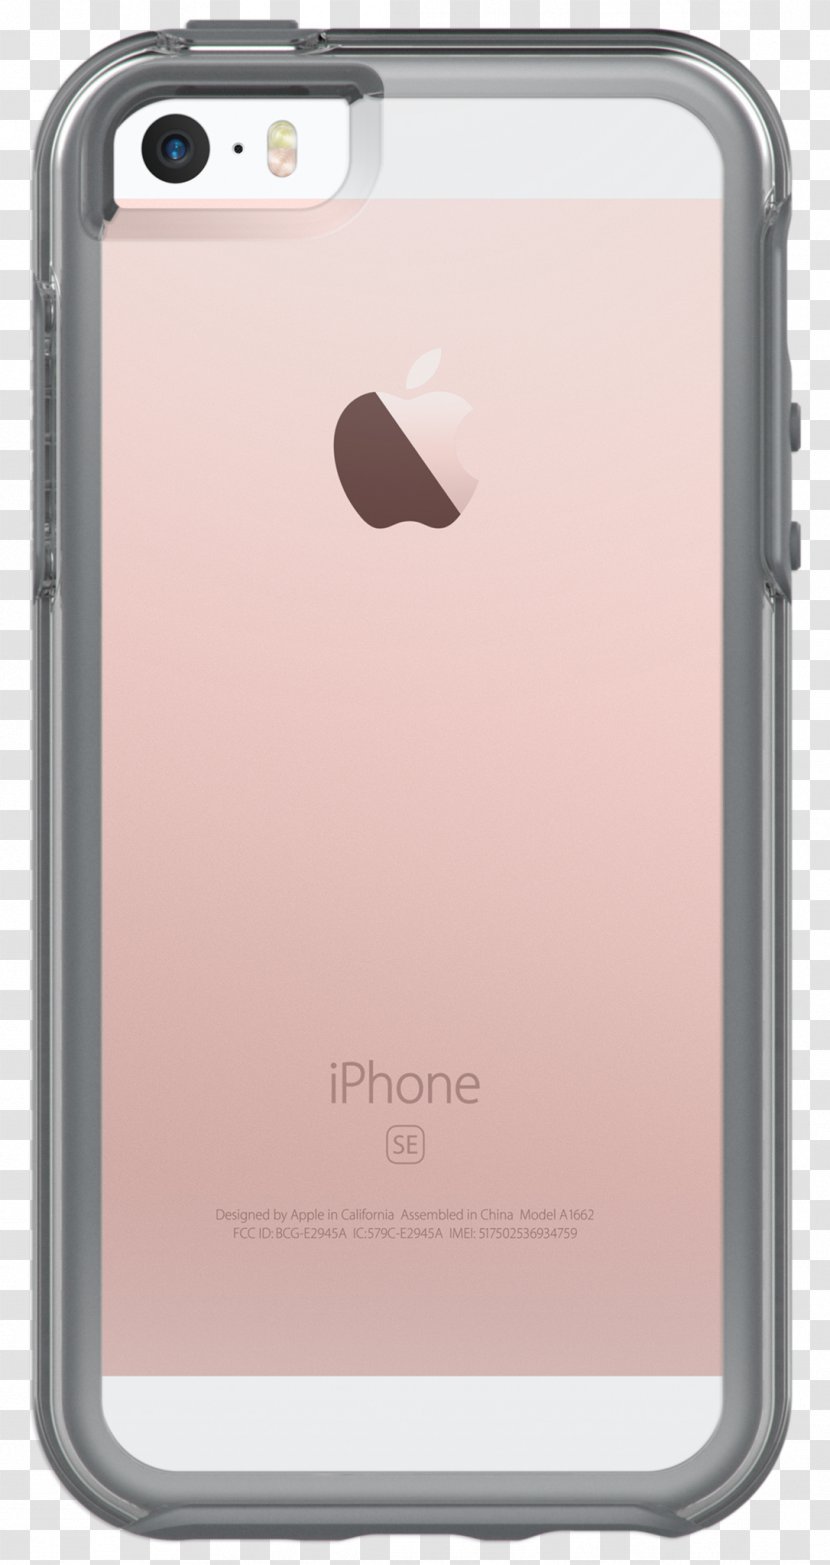 Apple IPhone 5s - Iphone Se - 32 GBGoldUnlockedGSMHong Kong Import X 6Crystal Box Transparent PNG